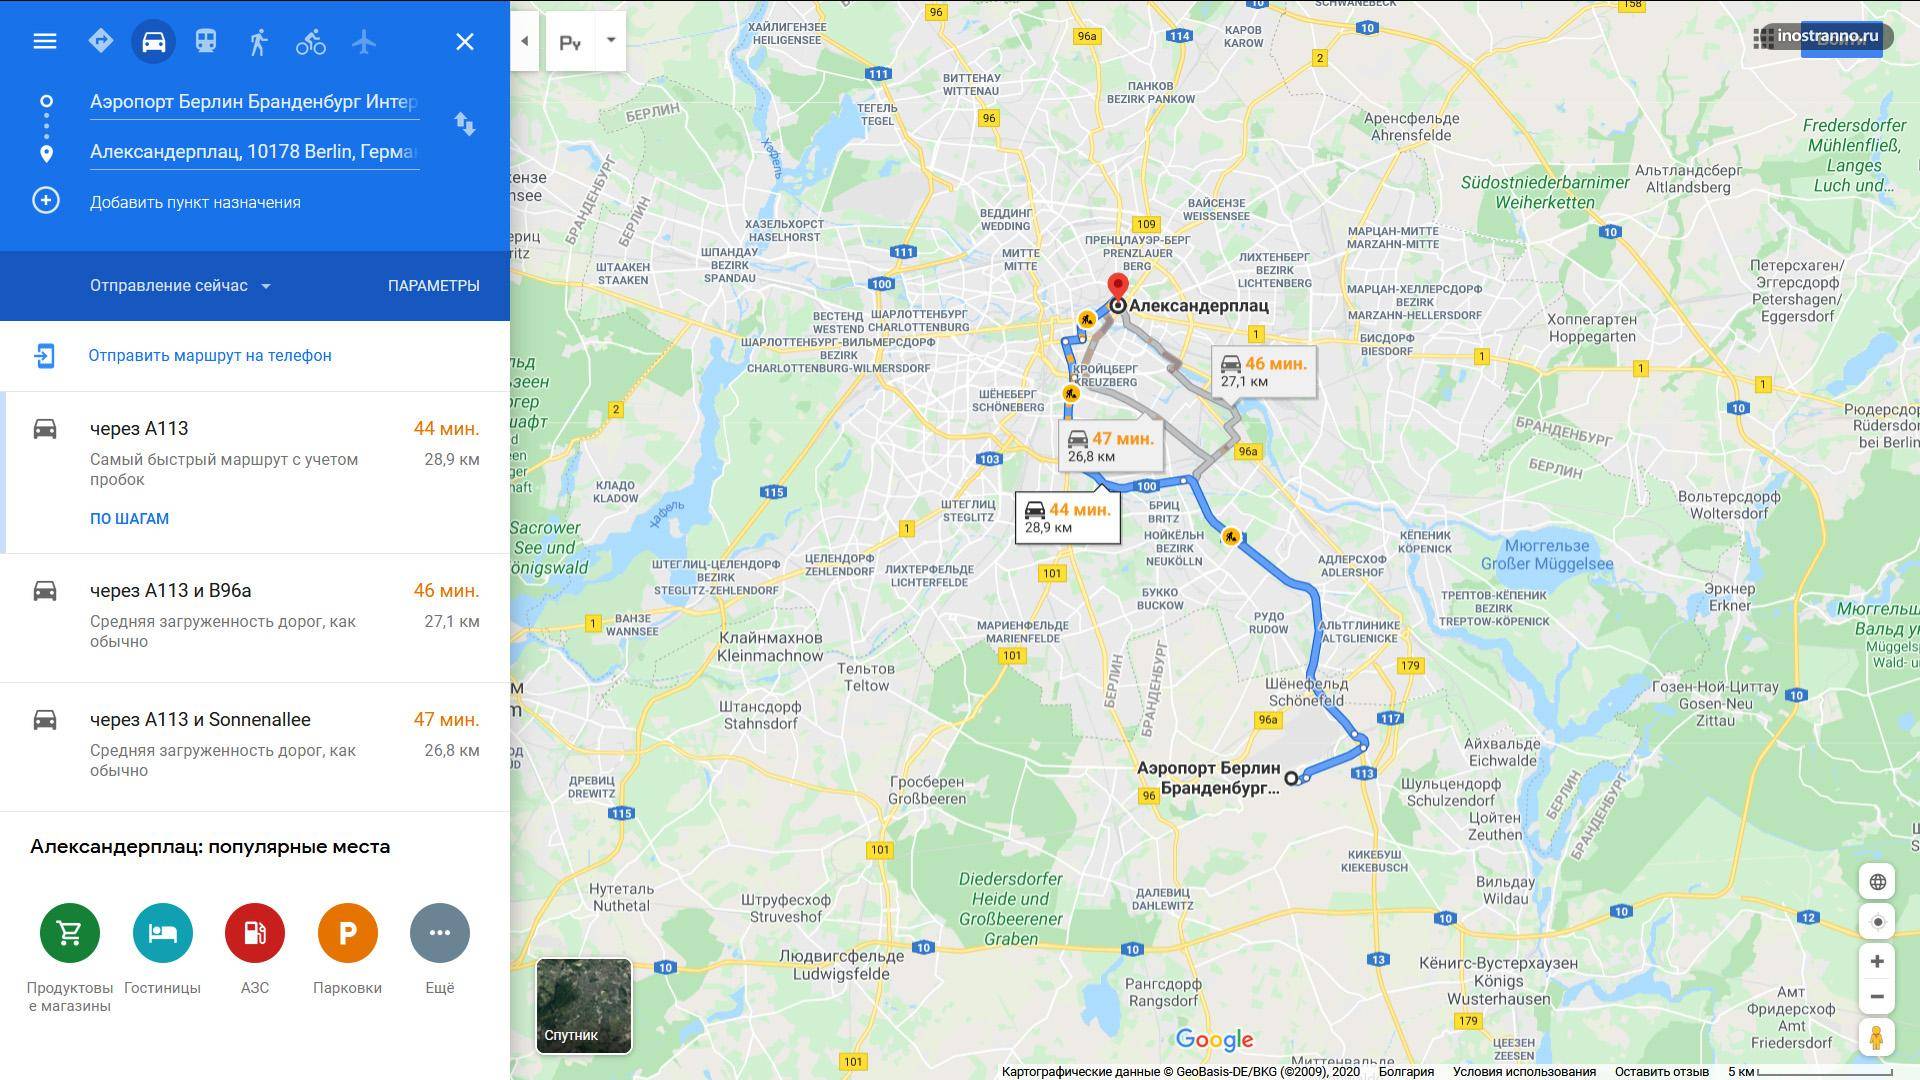 Маршрут  из новосибирска в берлин  (март 2021)  расстояние 5248 км как сократить машрут, быстрые маршрут на машине, отзывы о качестве дороги